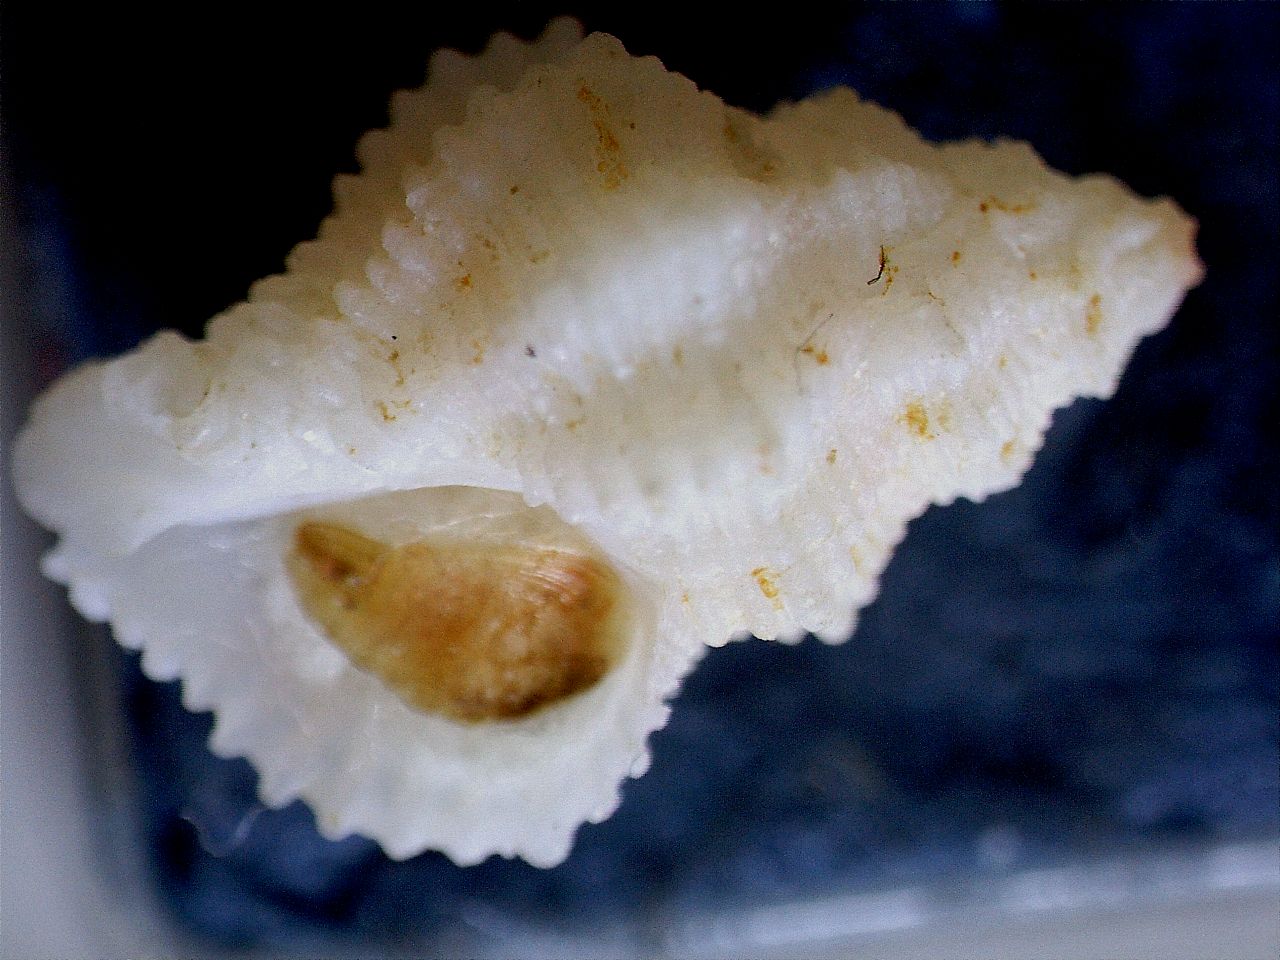 Coralliophila ahuiri